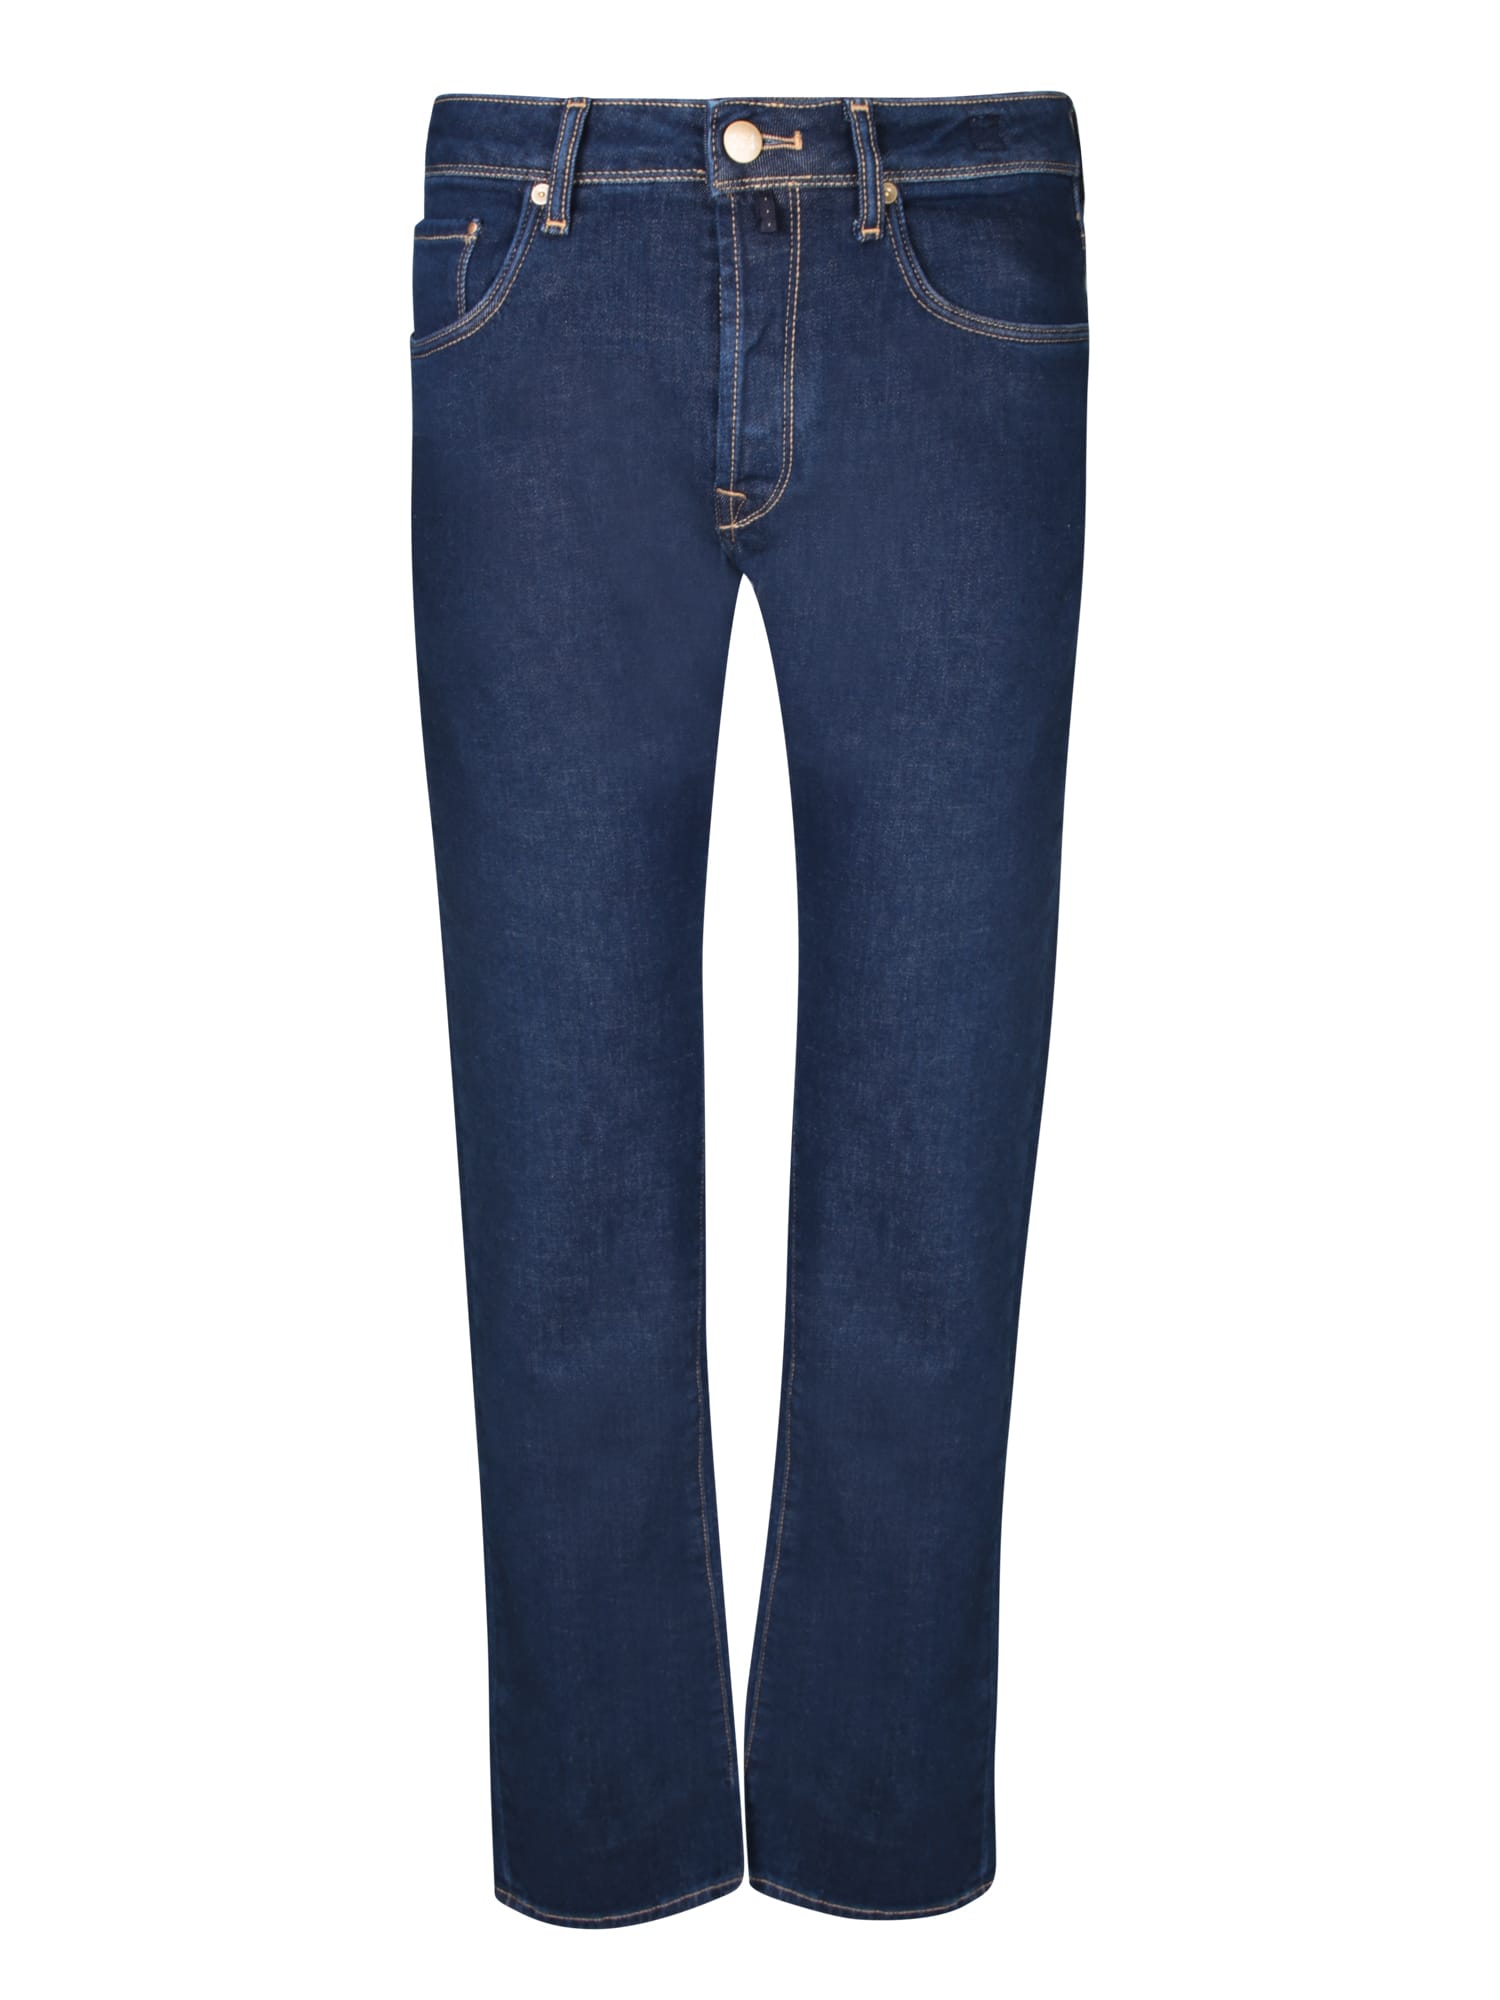 Shop Incotex 5t Blue Denim Jeans